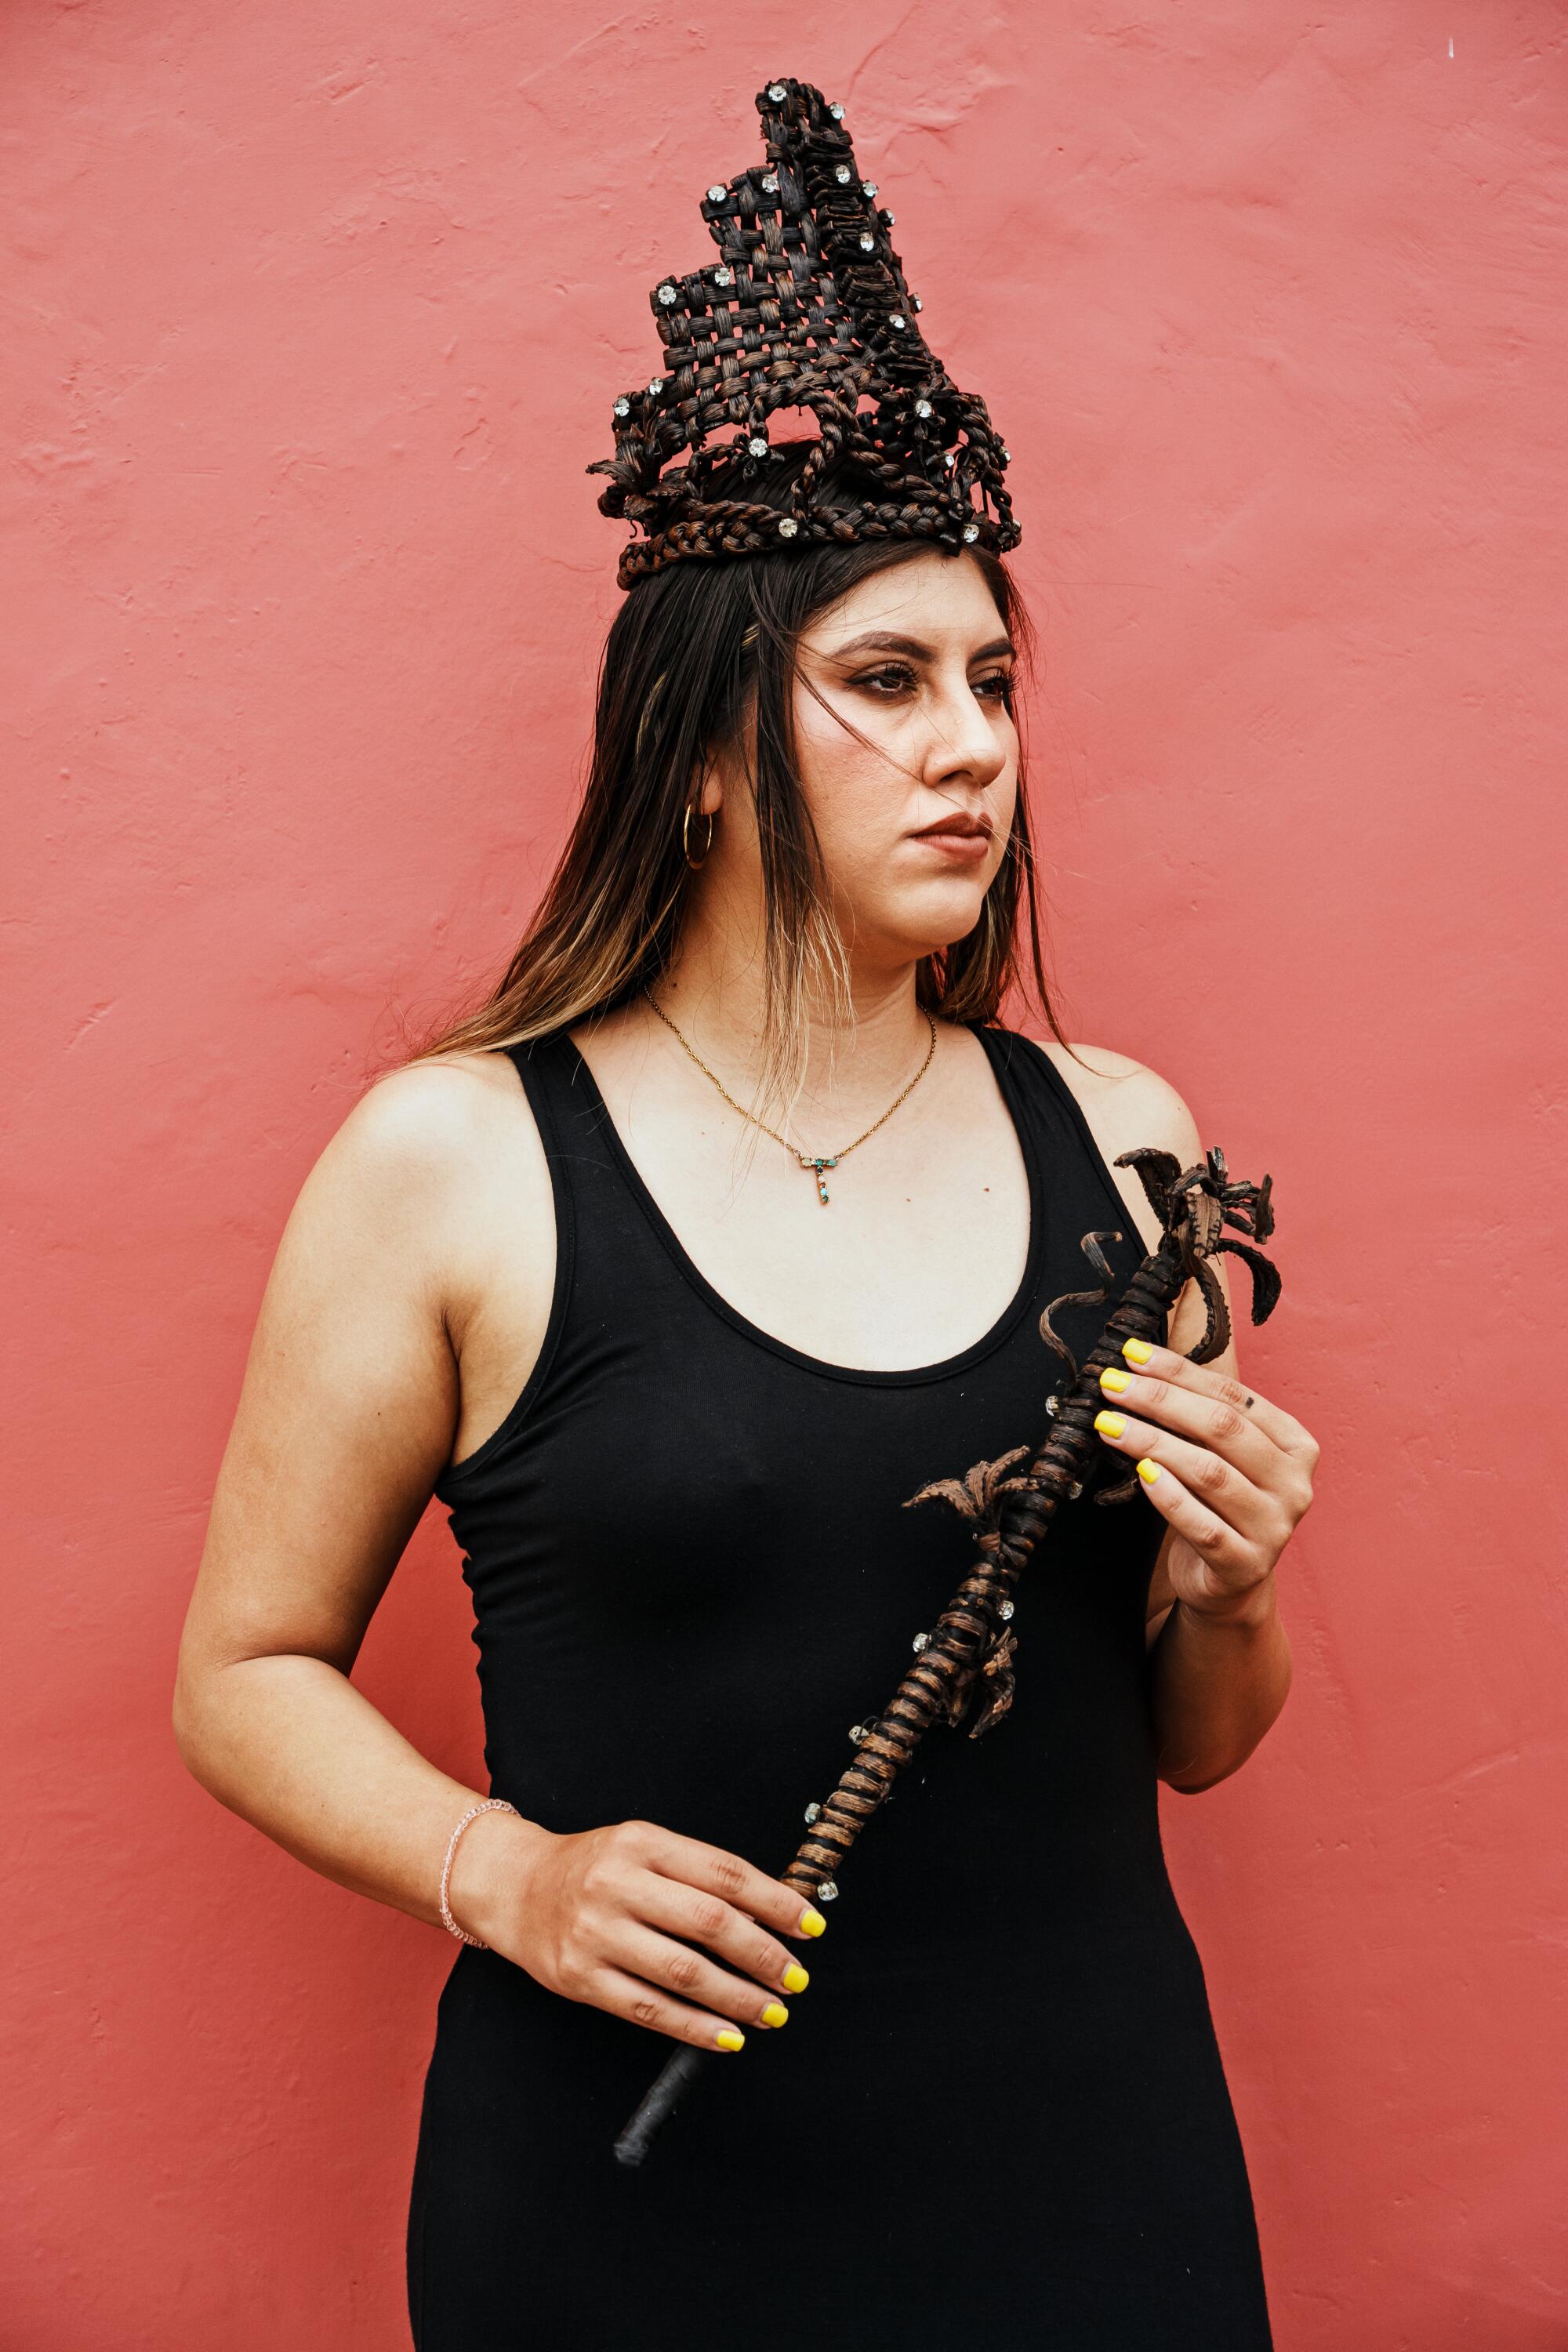 26 岁的塔尼亚·扎亚斯 (Tania Zayas) 戴着香草王冠和魔杖摆出姿势拍照。